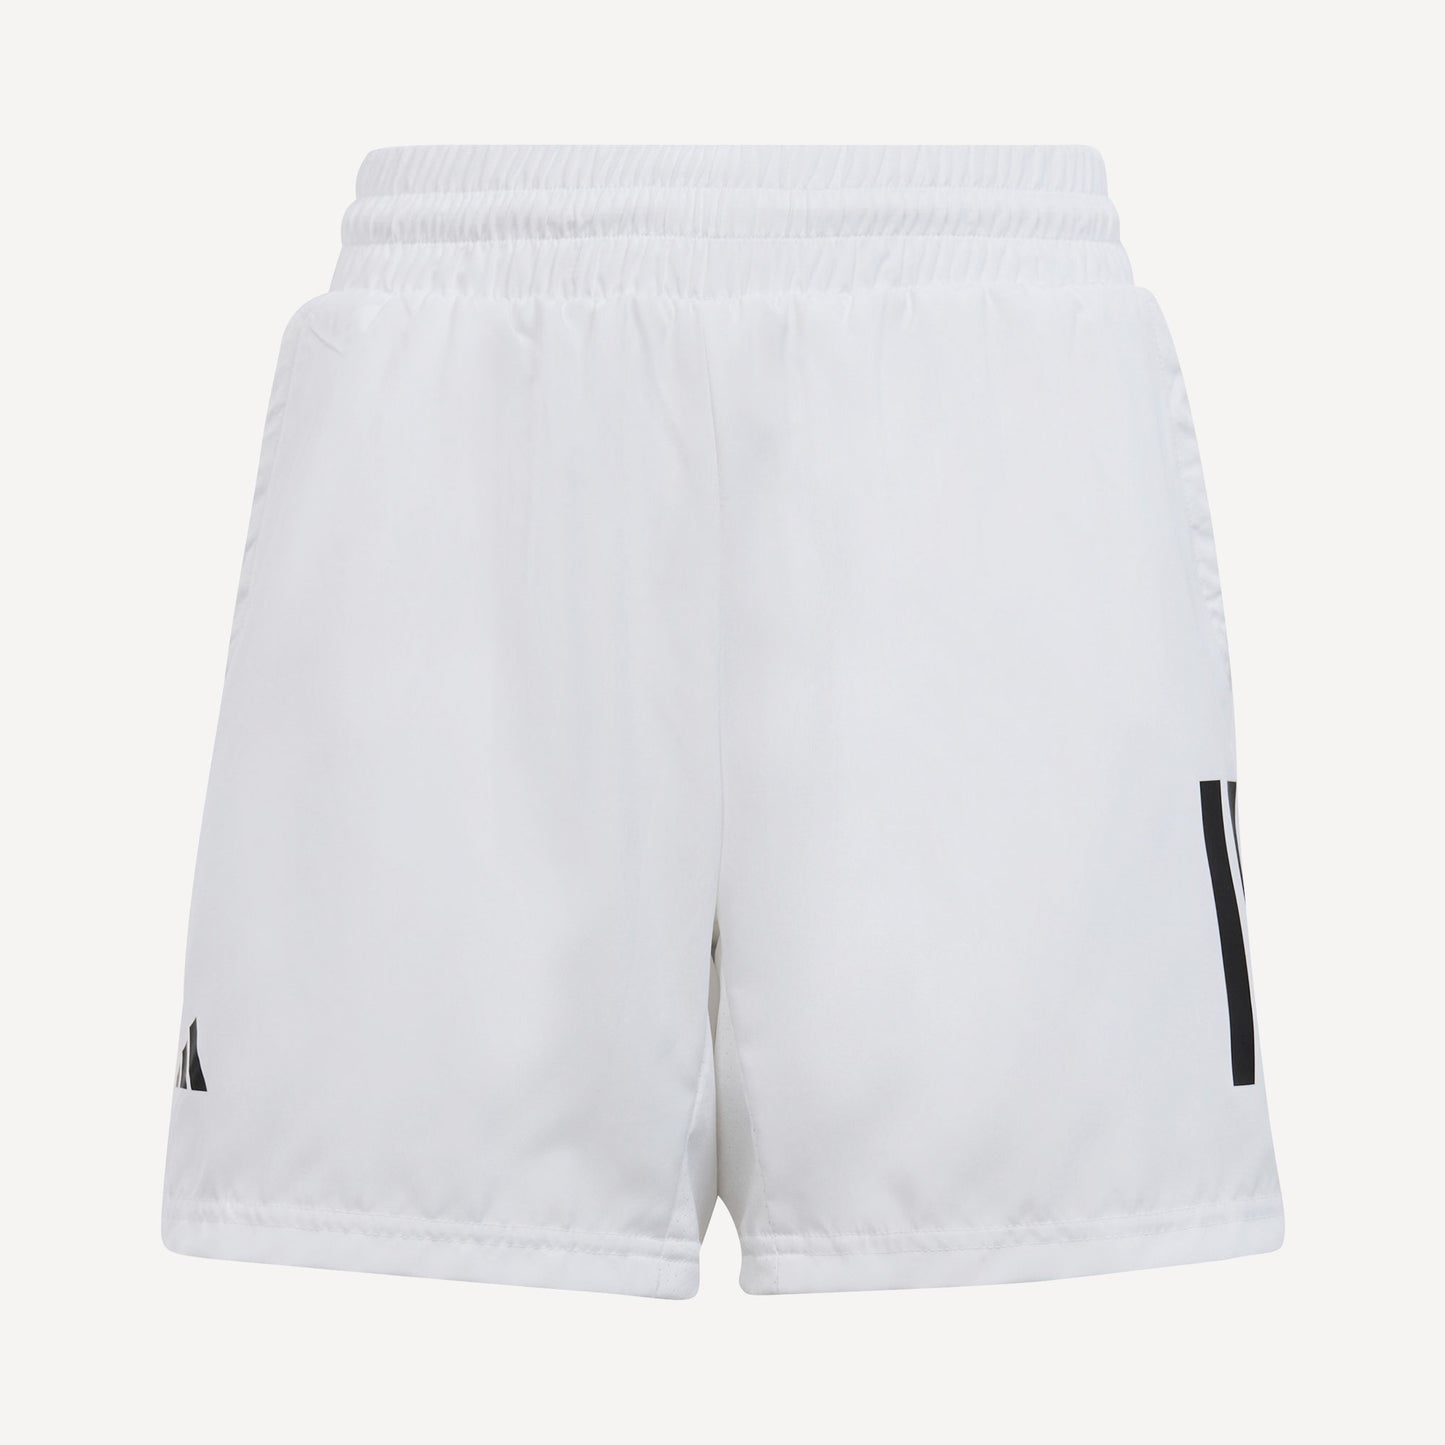 adidas Club 3S Boys' Tennis Shorts White (1)